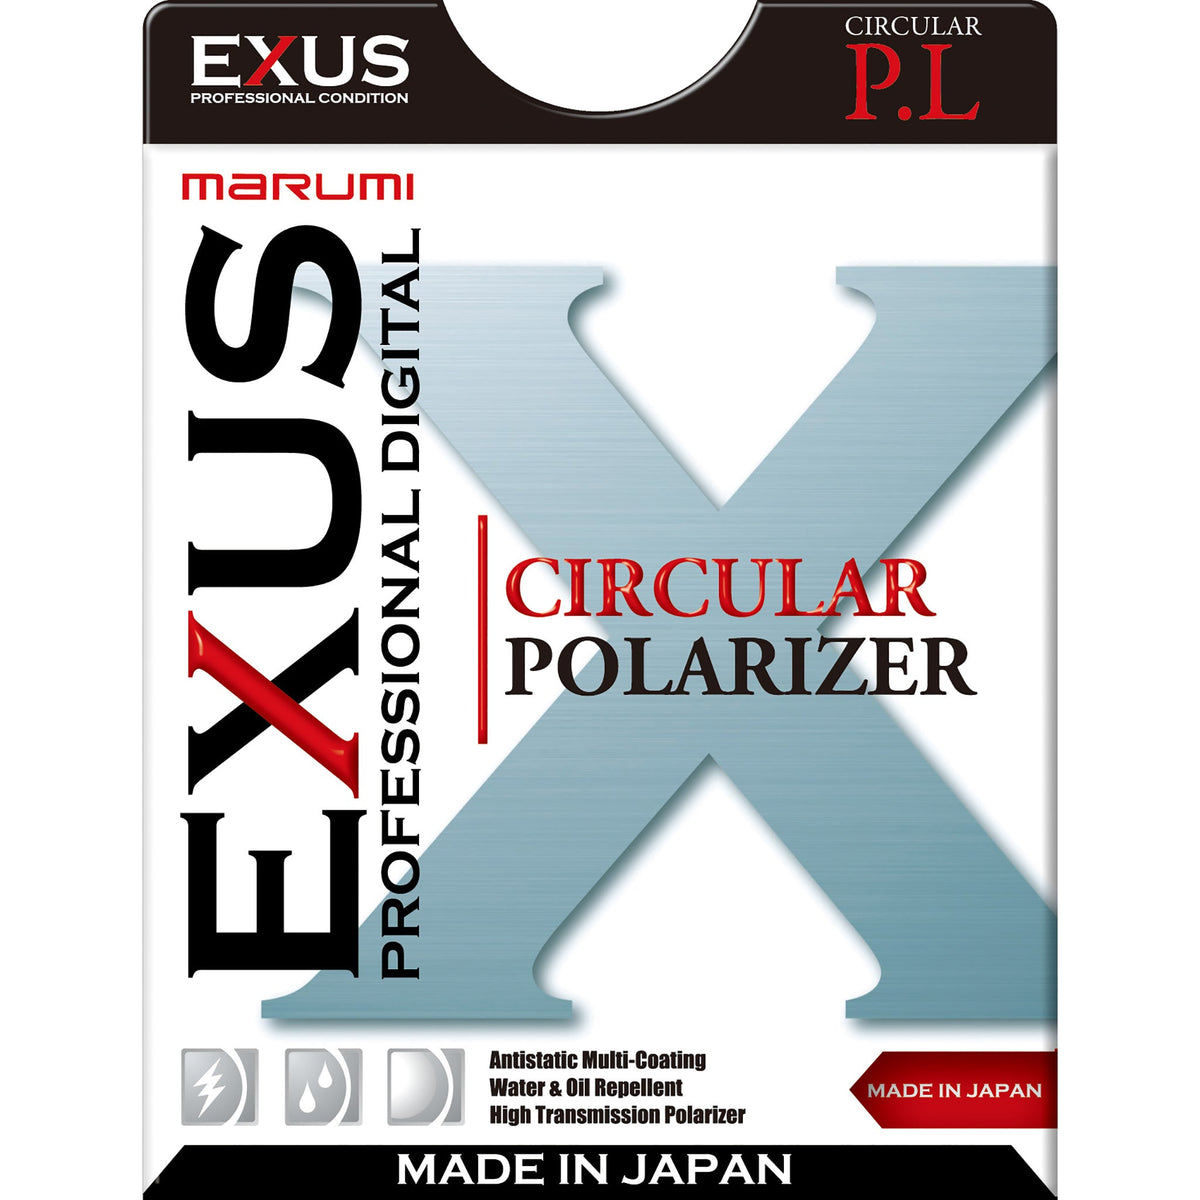 Marumi EXUS Circular PL – marumi